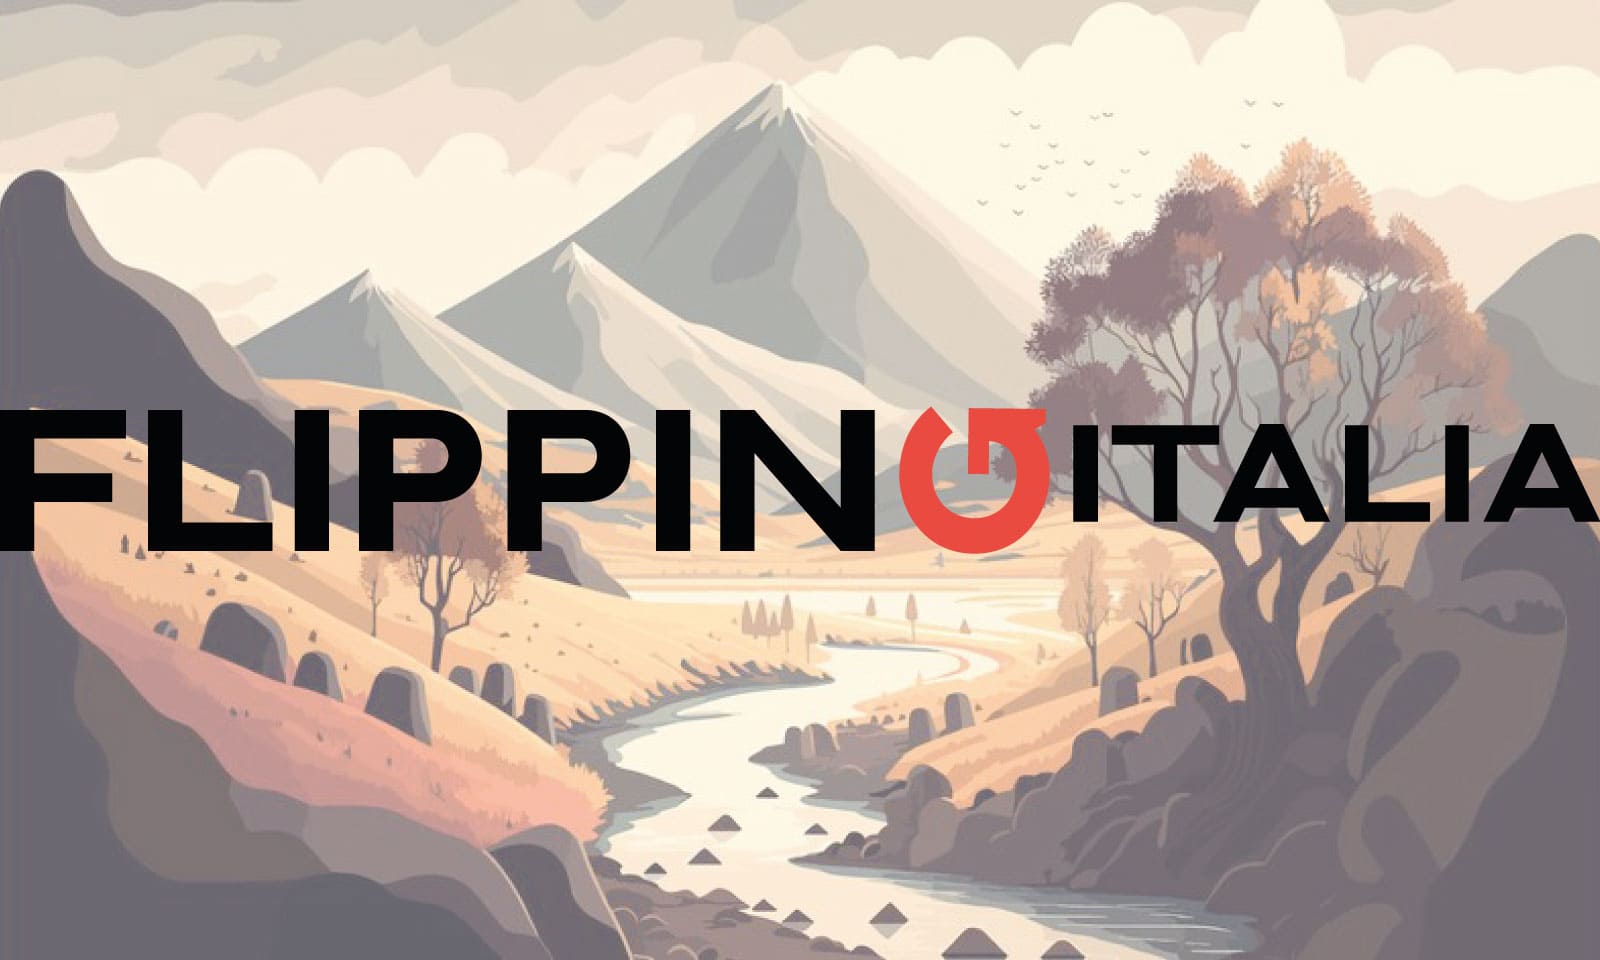 Parliamo di come funziona e che cosa è flippingitalia.com: Come guadagnare dal flipping in Italia.